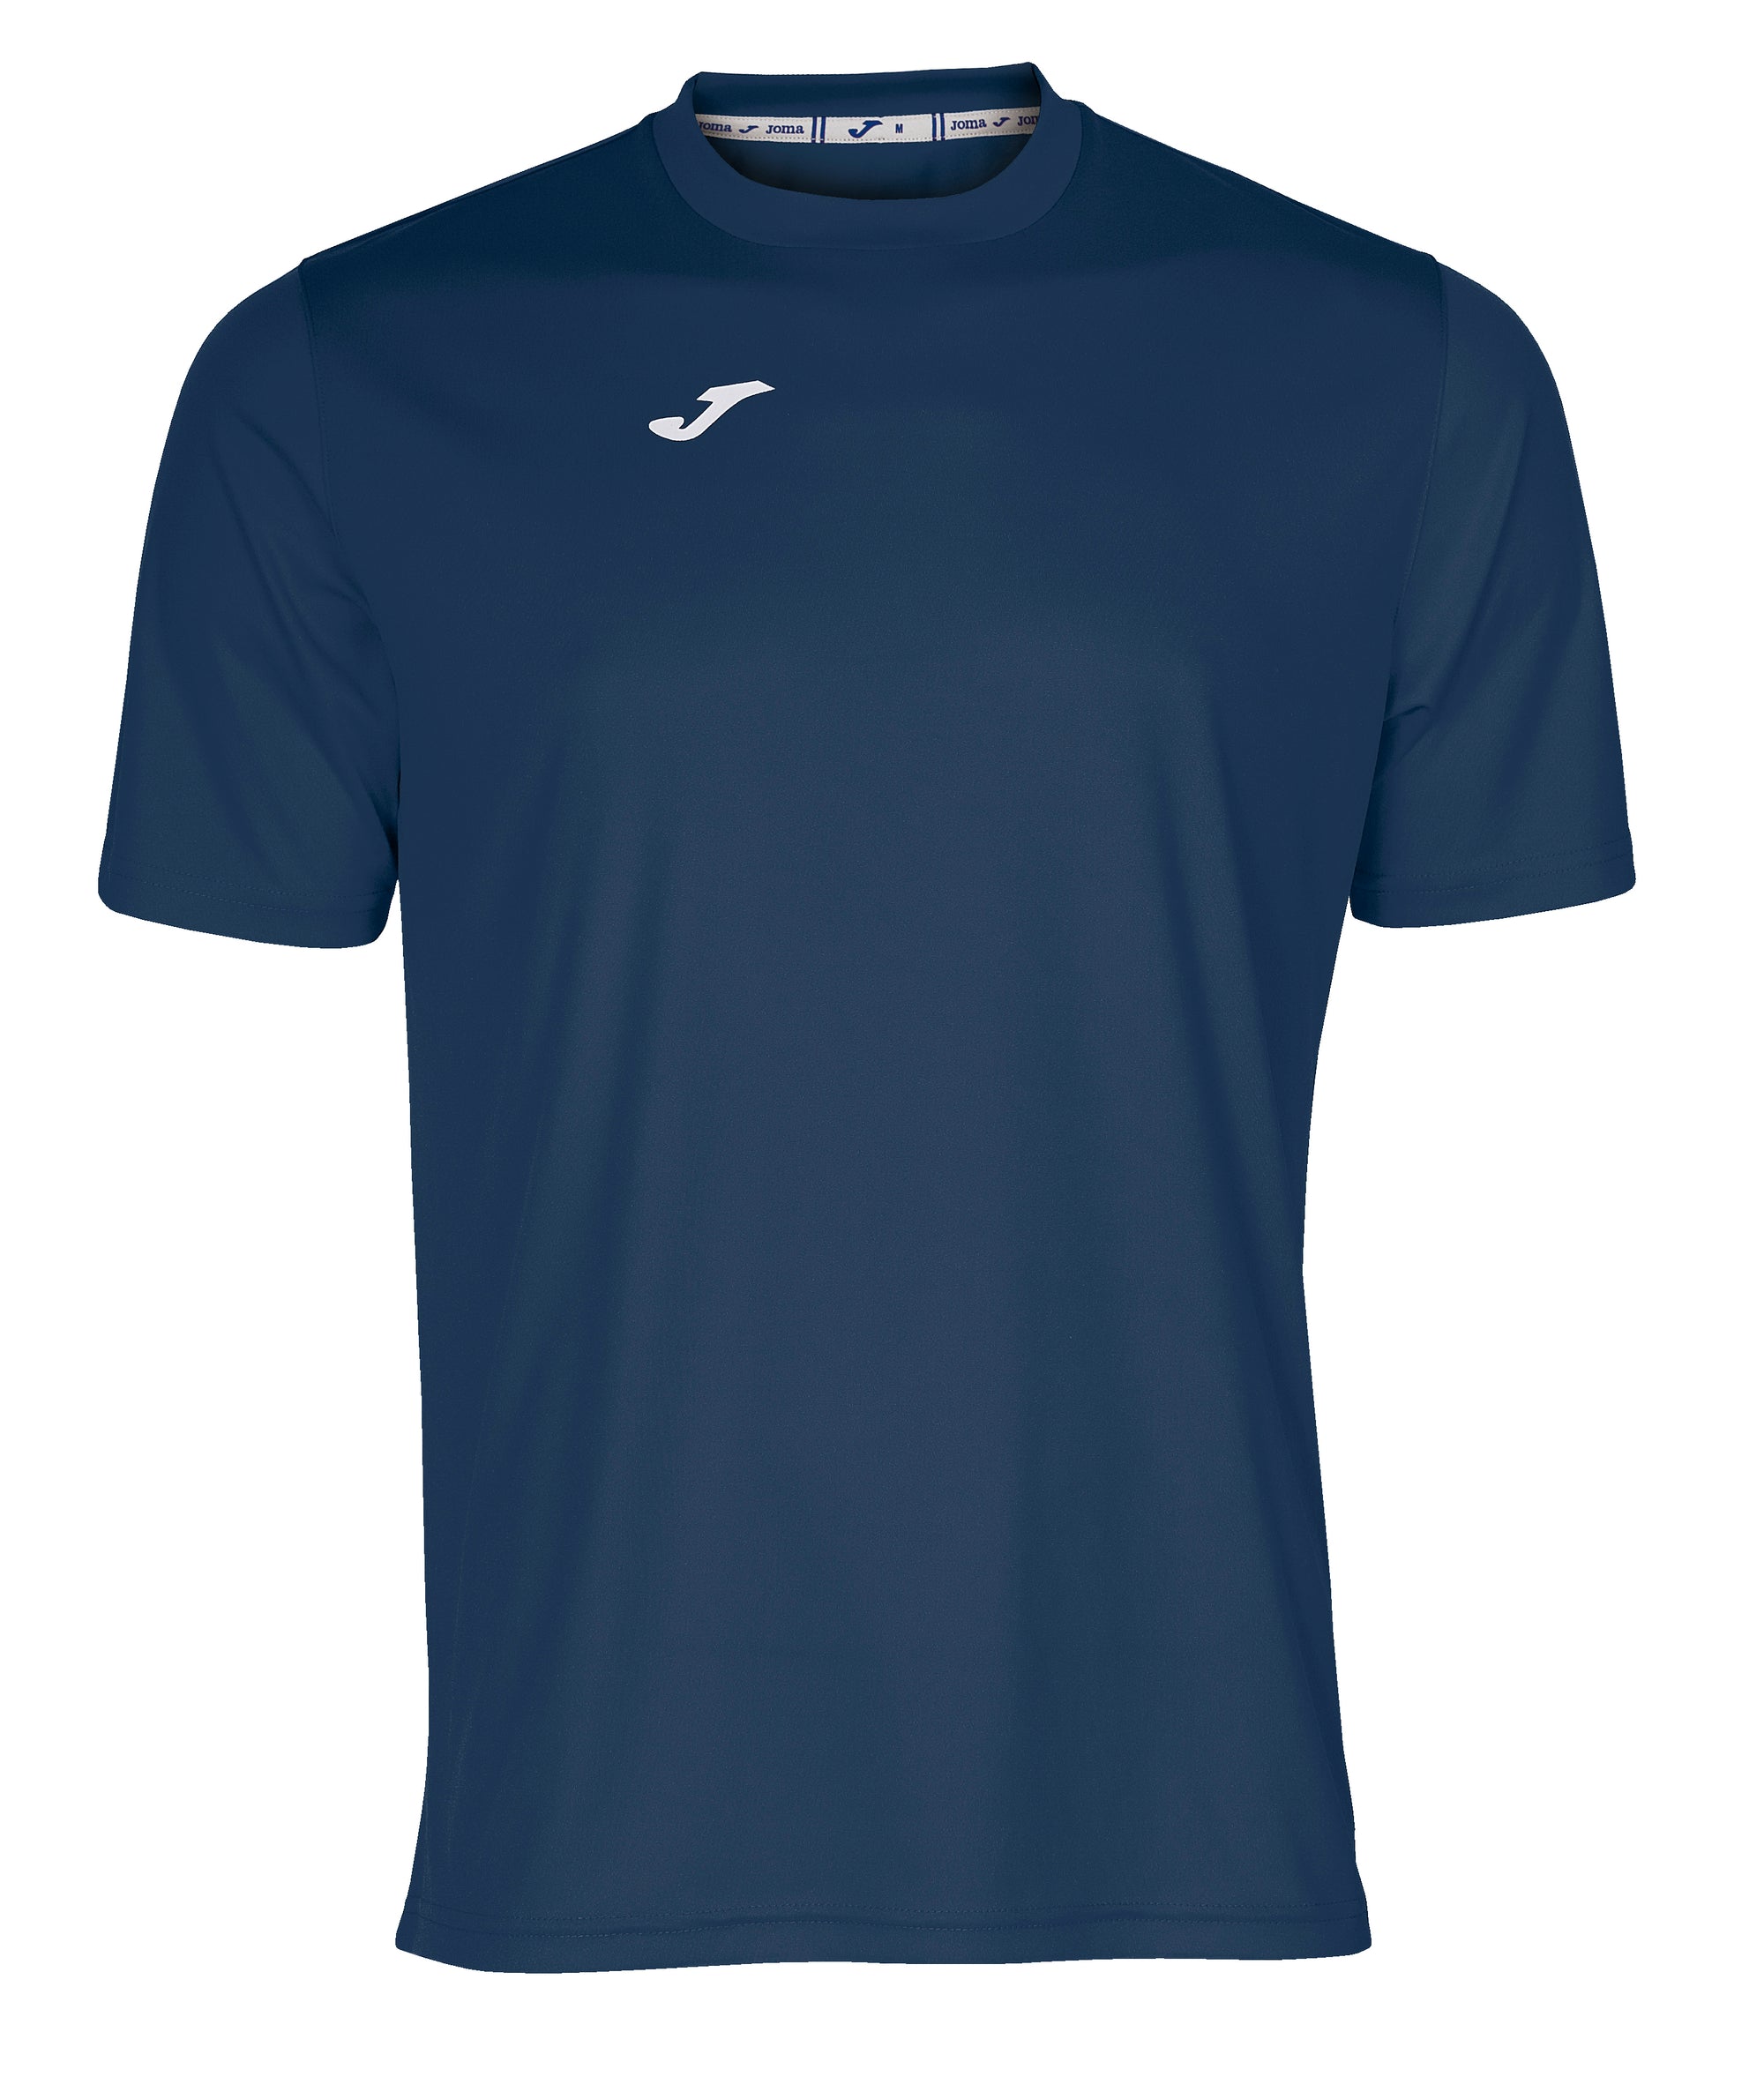 Joma Combi Short Sleeved T-Shirt - Dark Navy - footballkitsdirect.com